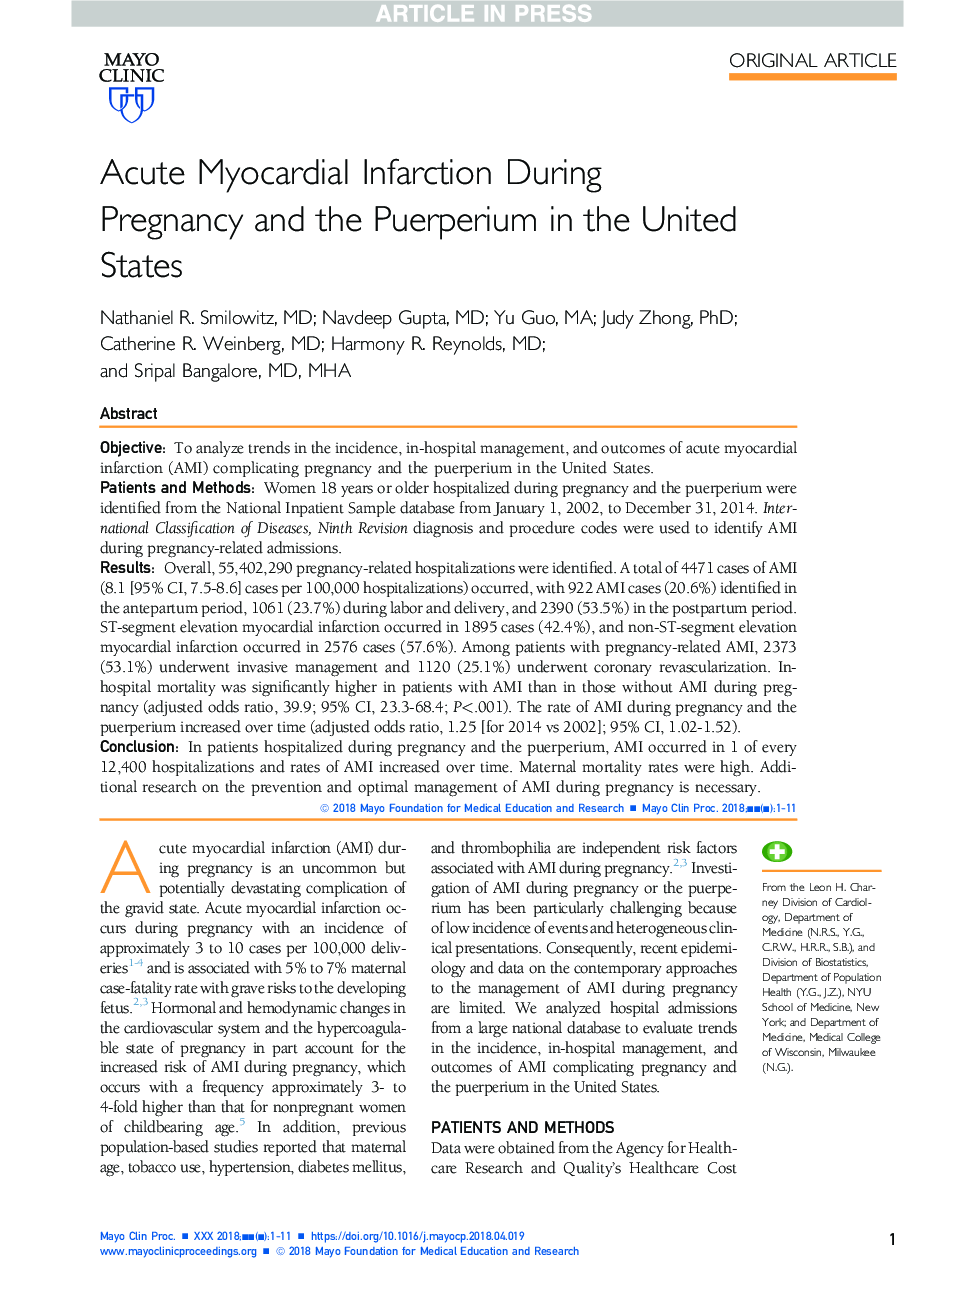 انفارکتوس حاد قلبی در دوران بارداری و در دوران بارداری در ایالات متحده